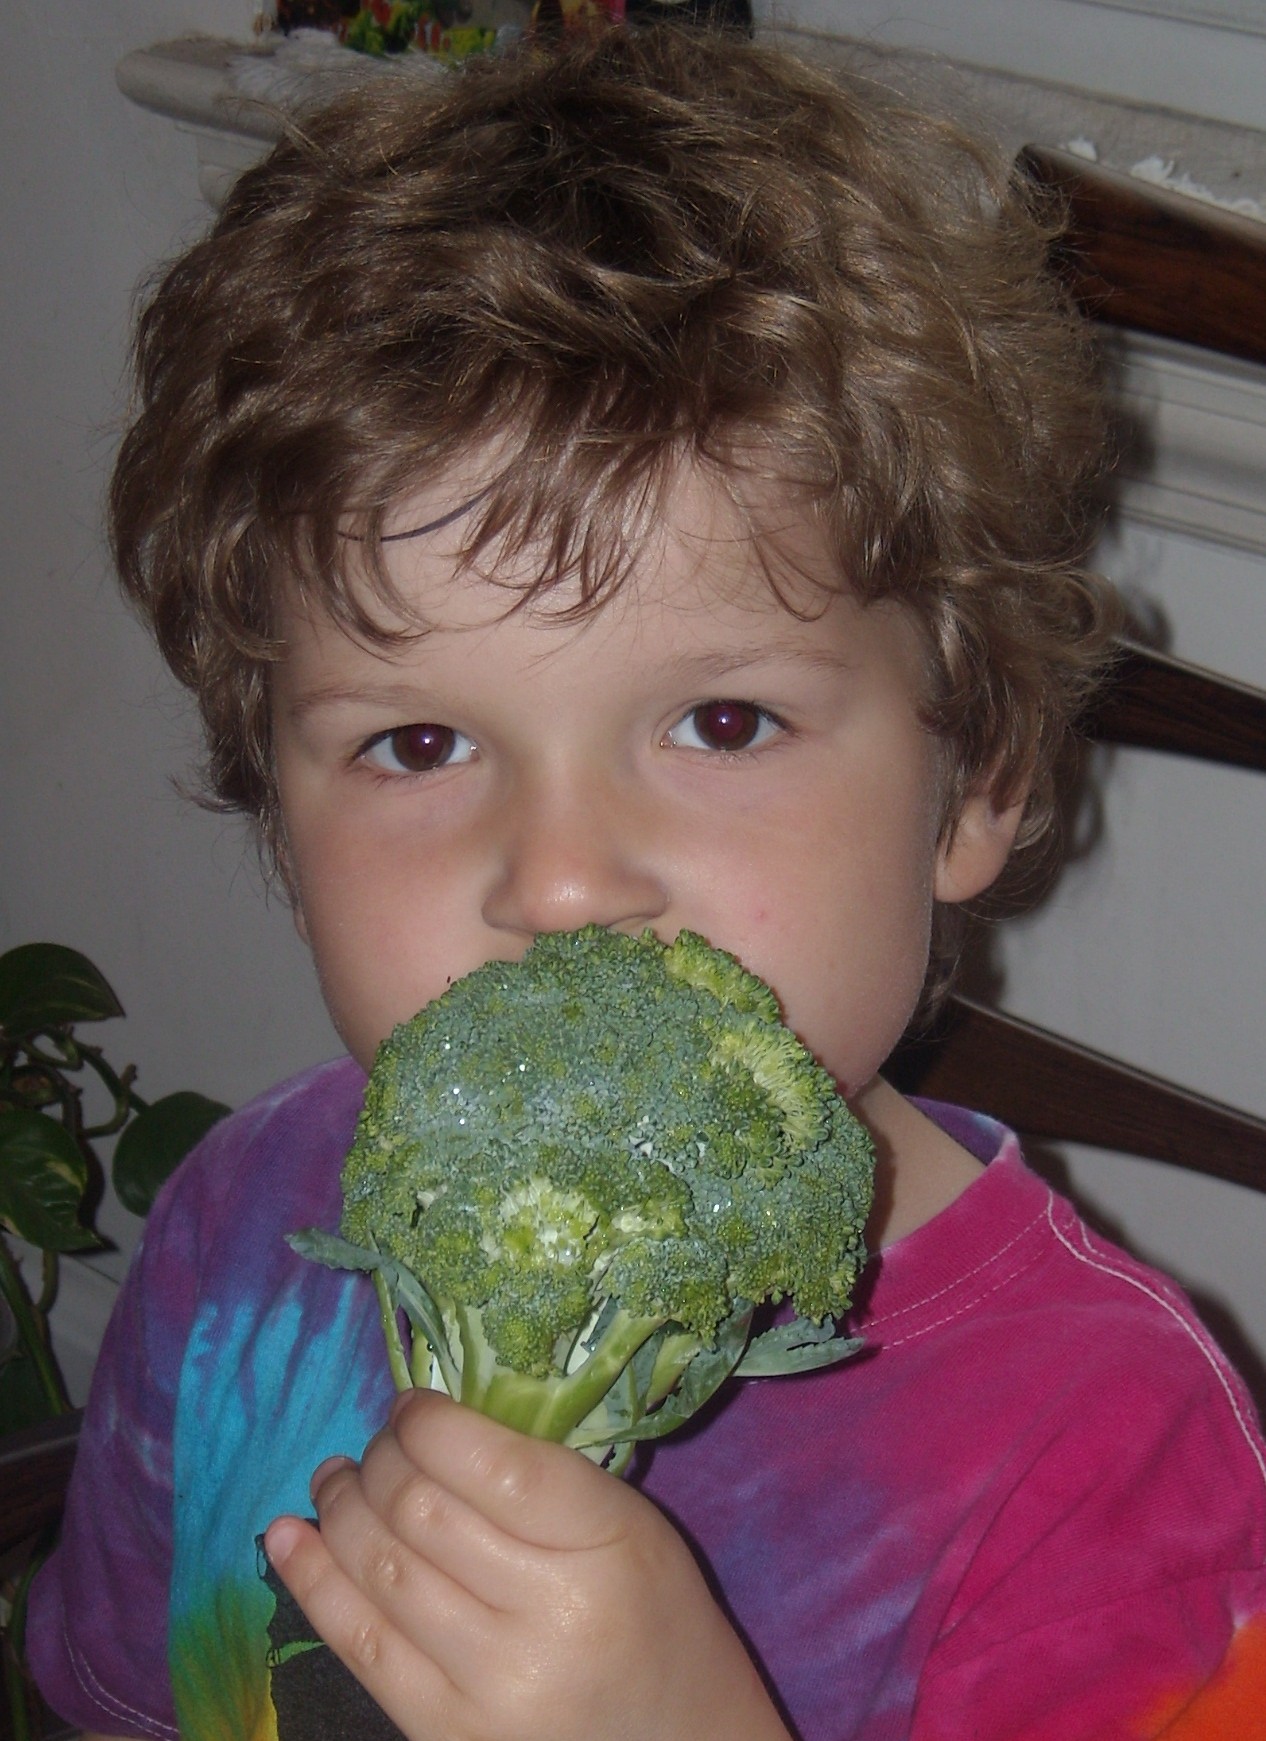 B eating broccoli